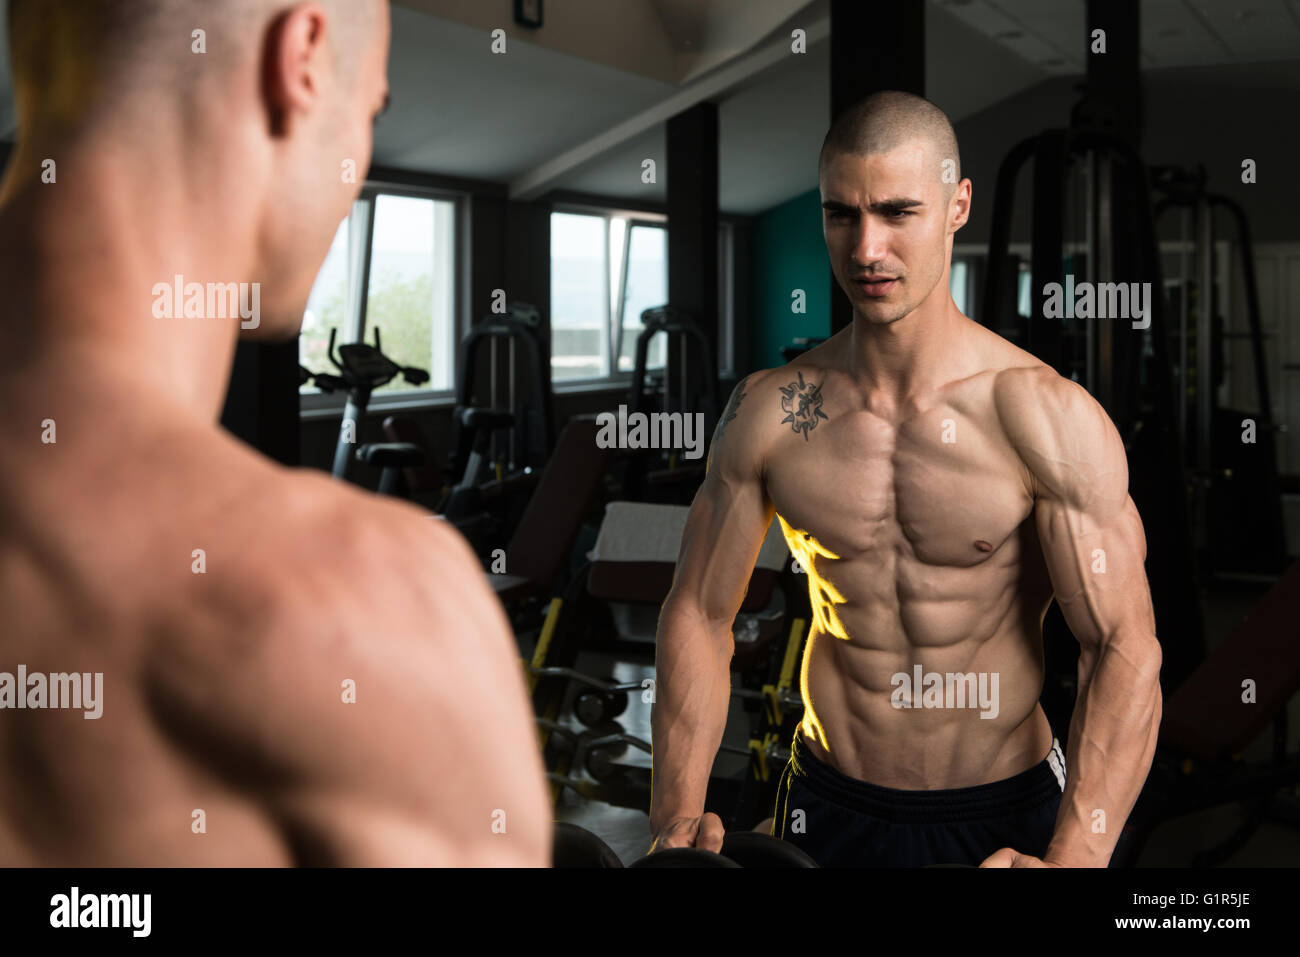 Junger Mann starke vor einem Spiegel stehen und beugen Muskeln - muskulöse athletische Bodybuilder Fitness Model posiert nach Ex Stockfoto